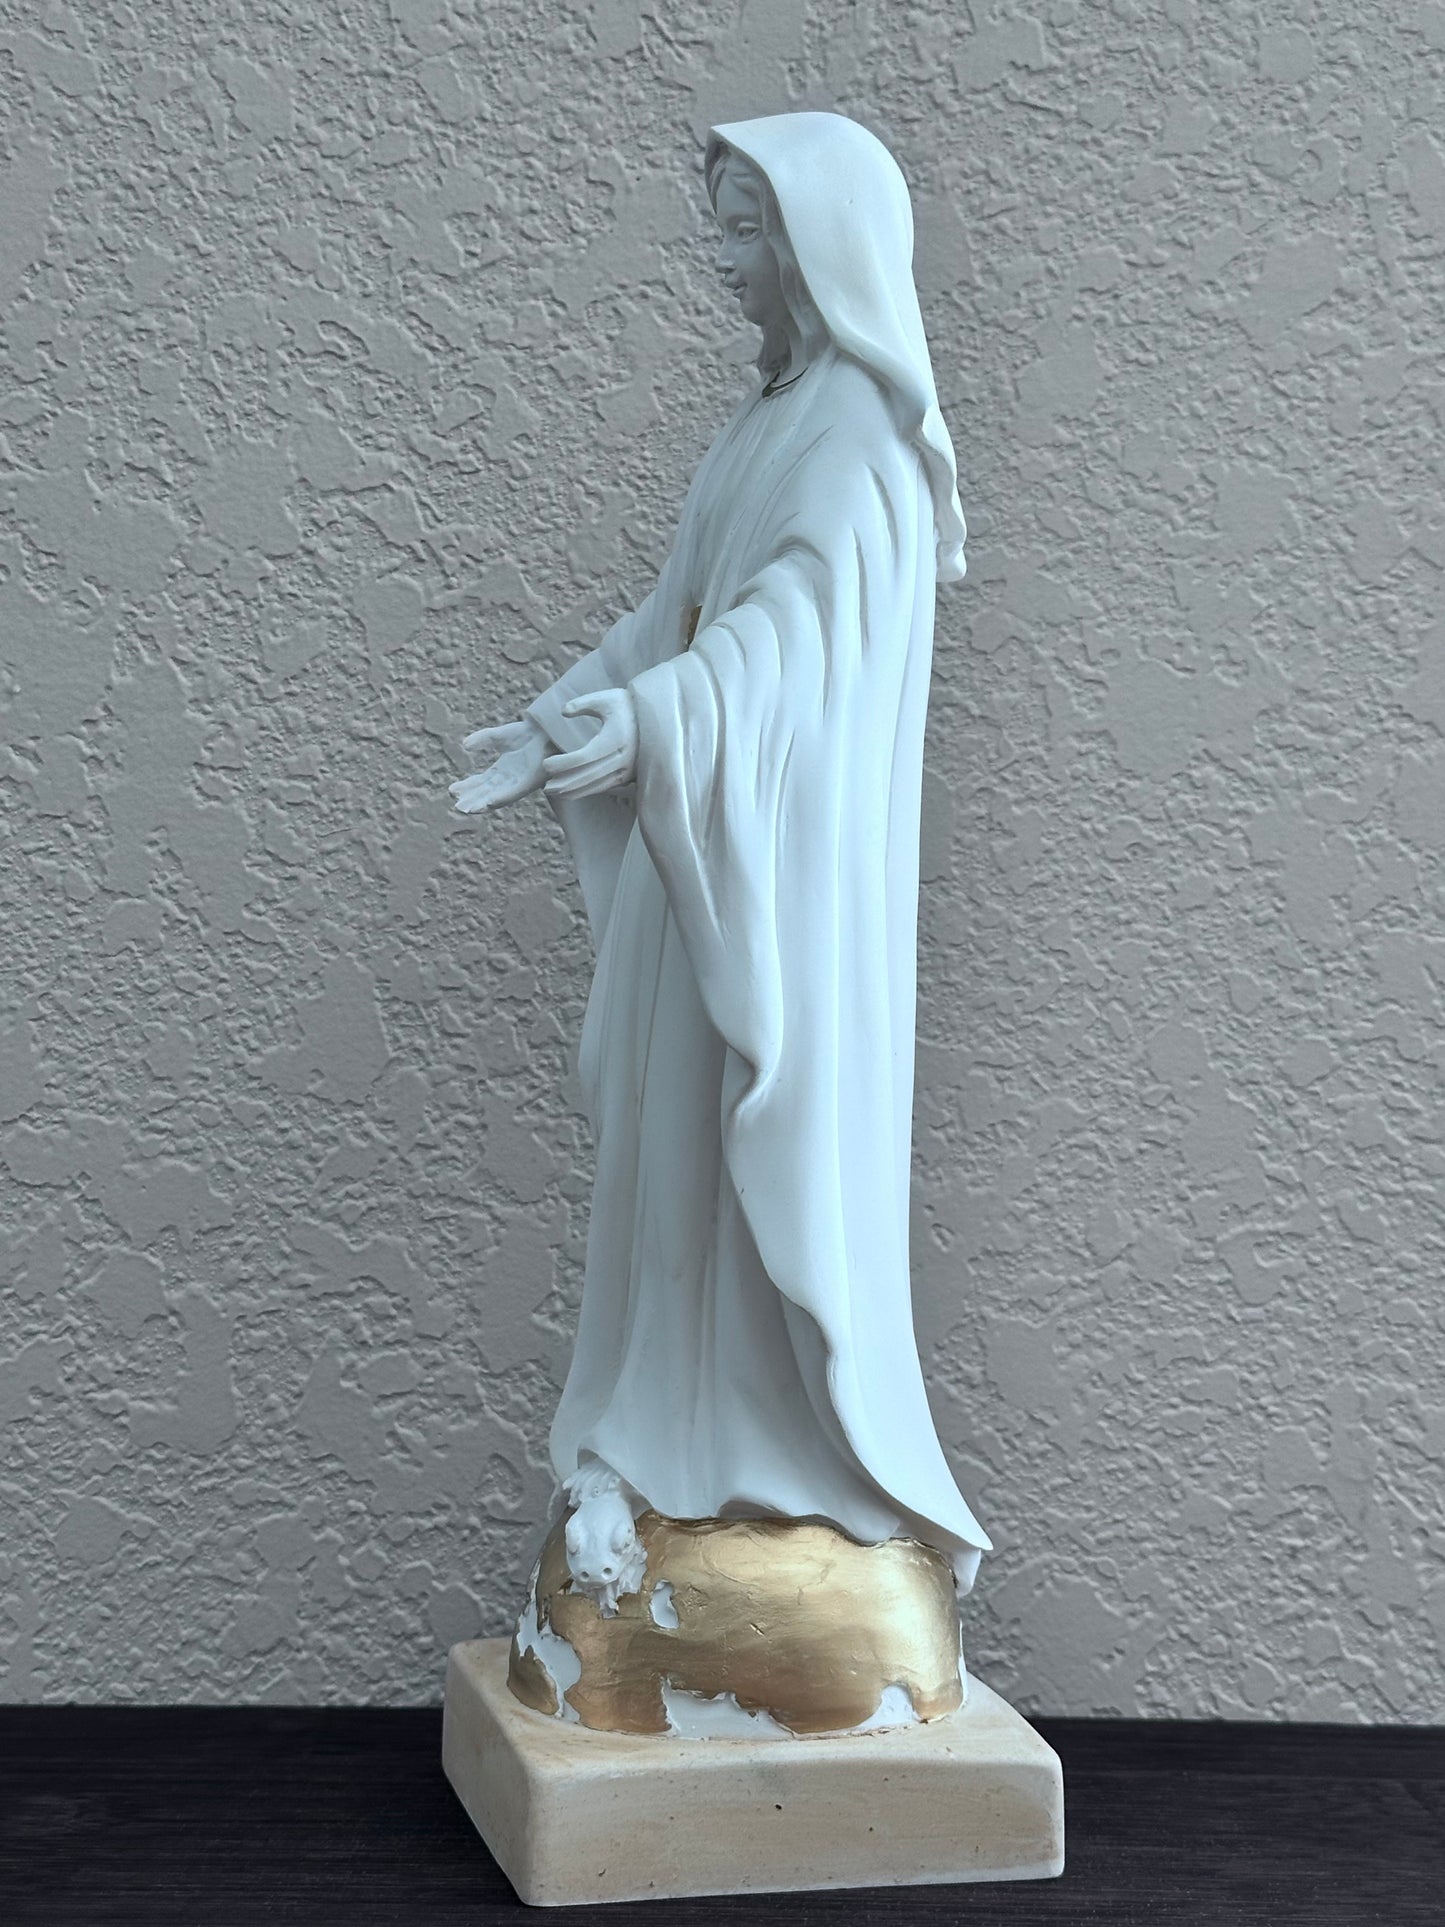 Estatua de la Virgen Milagrosa de resina de color blanco de 11,8 pulgadas